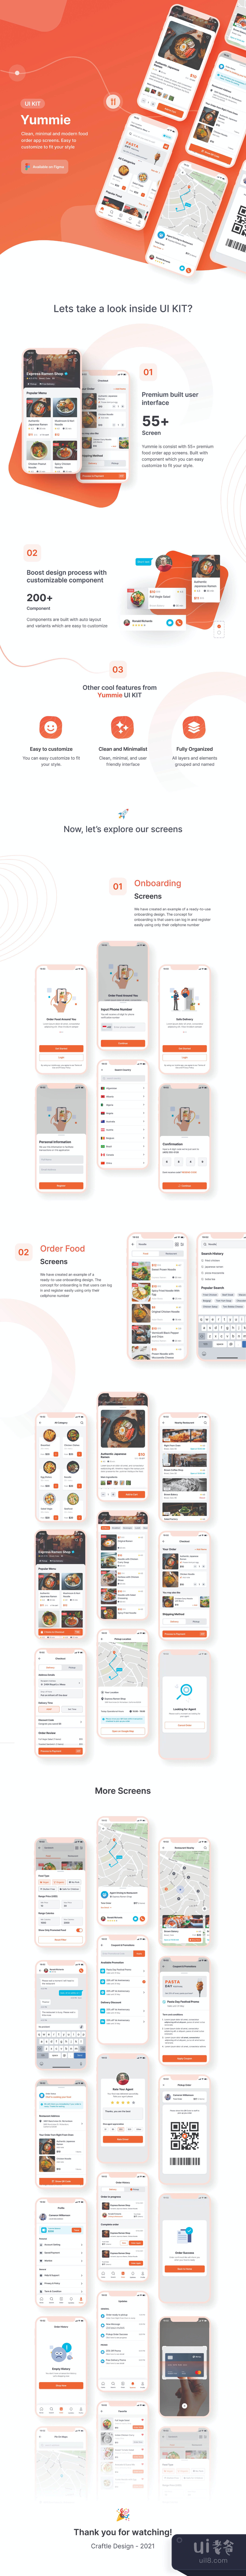 外卖美食App设计插图